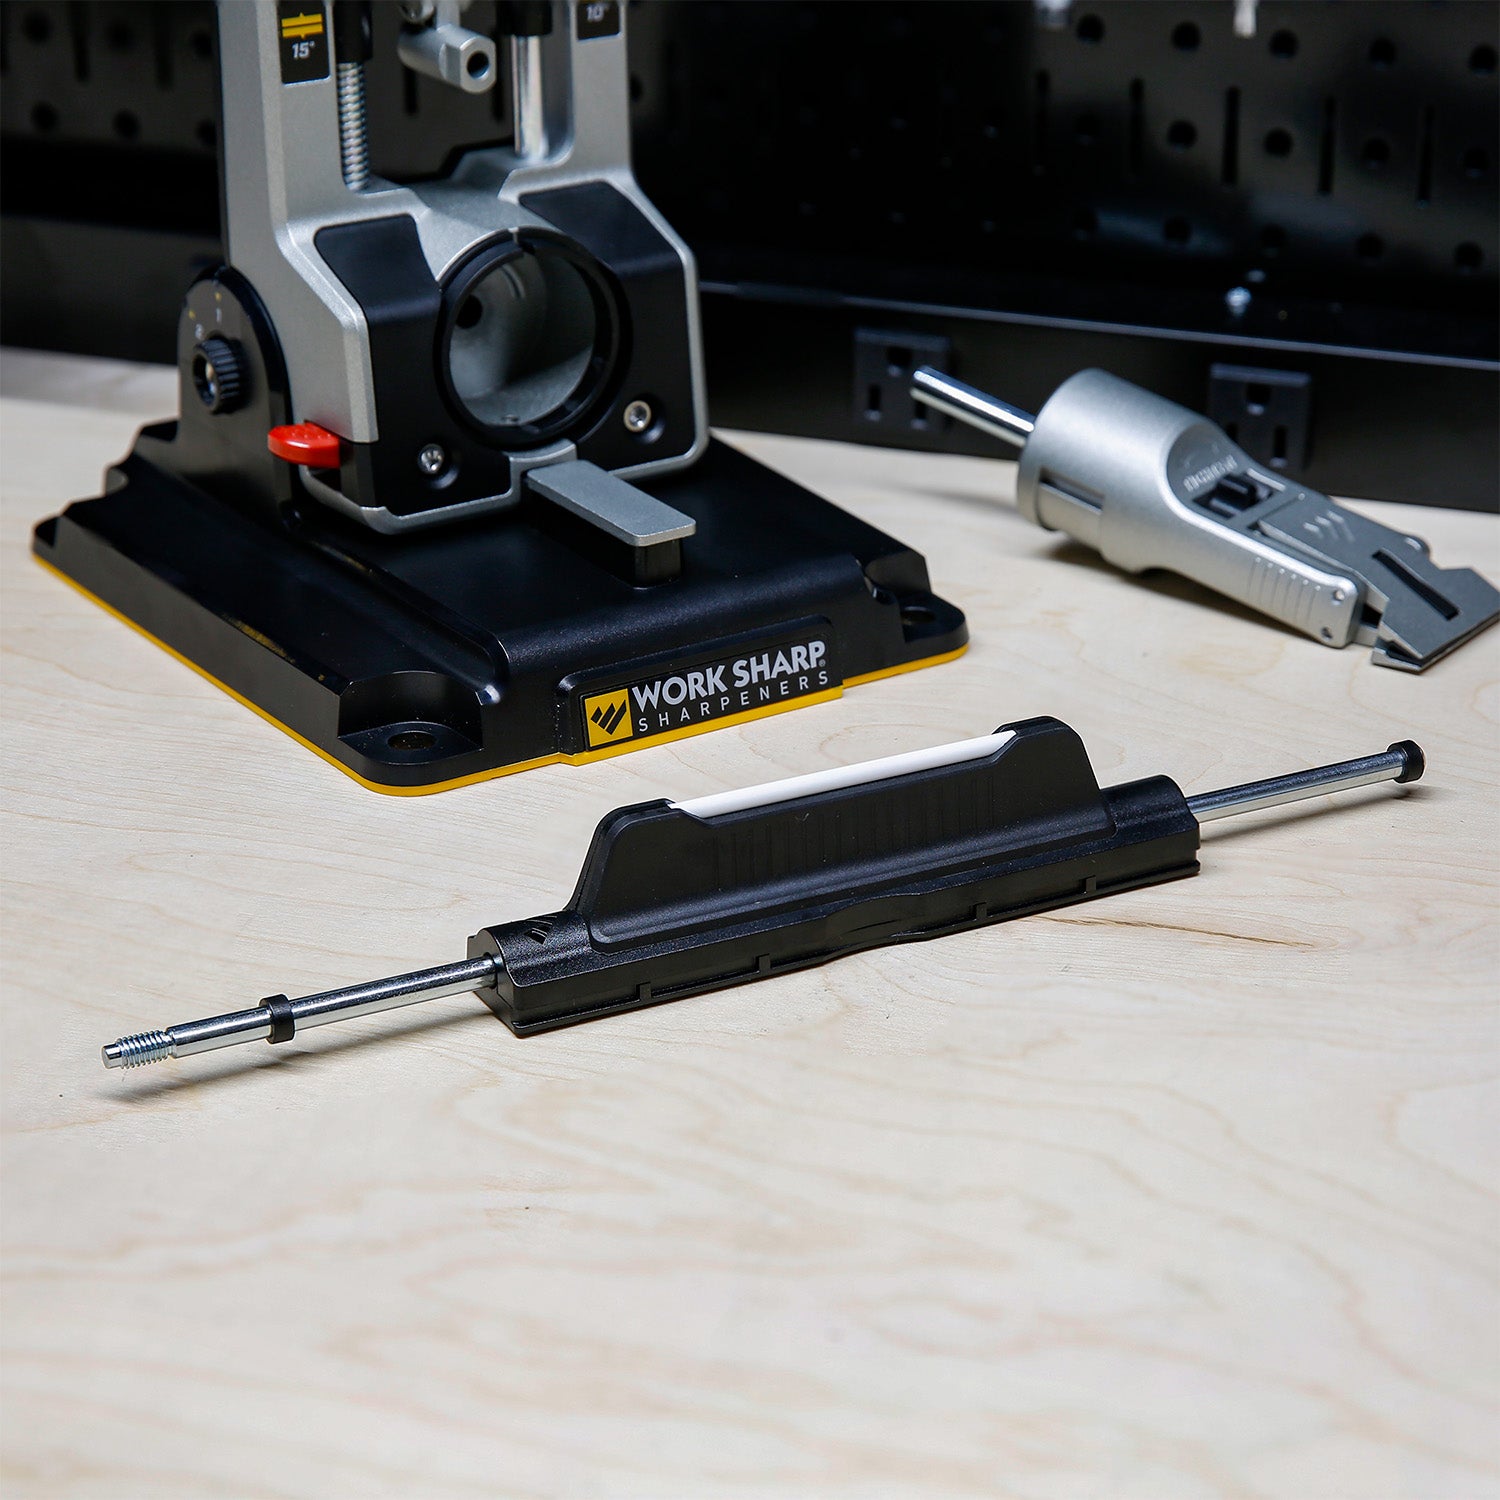 Work Sharp® introduces Precision Adjust Knife Sharpener™